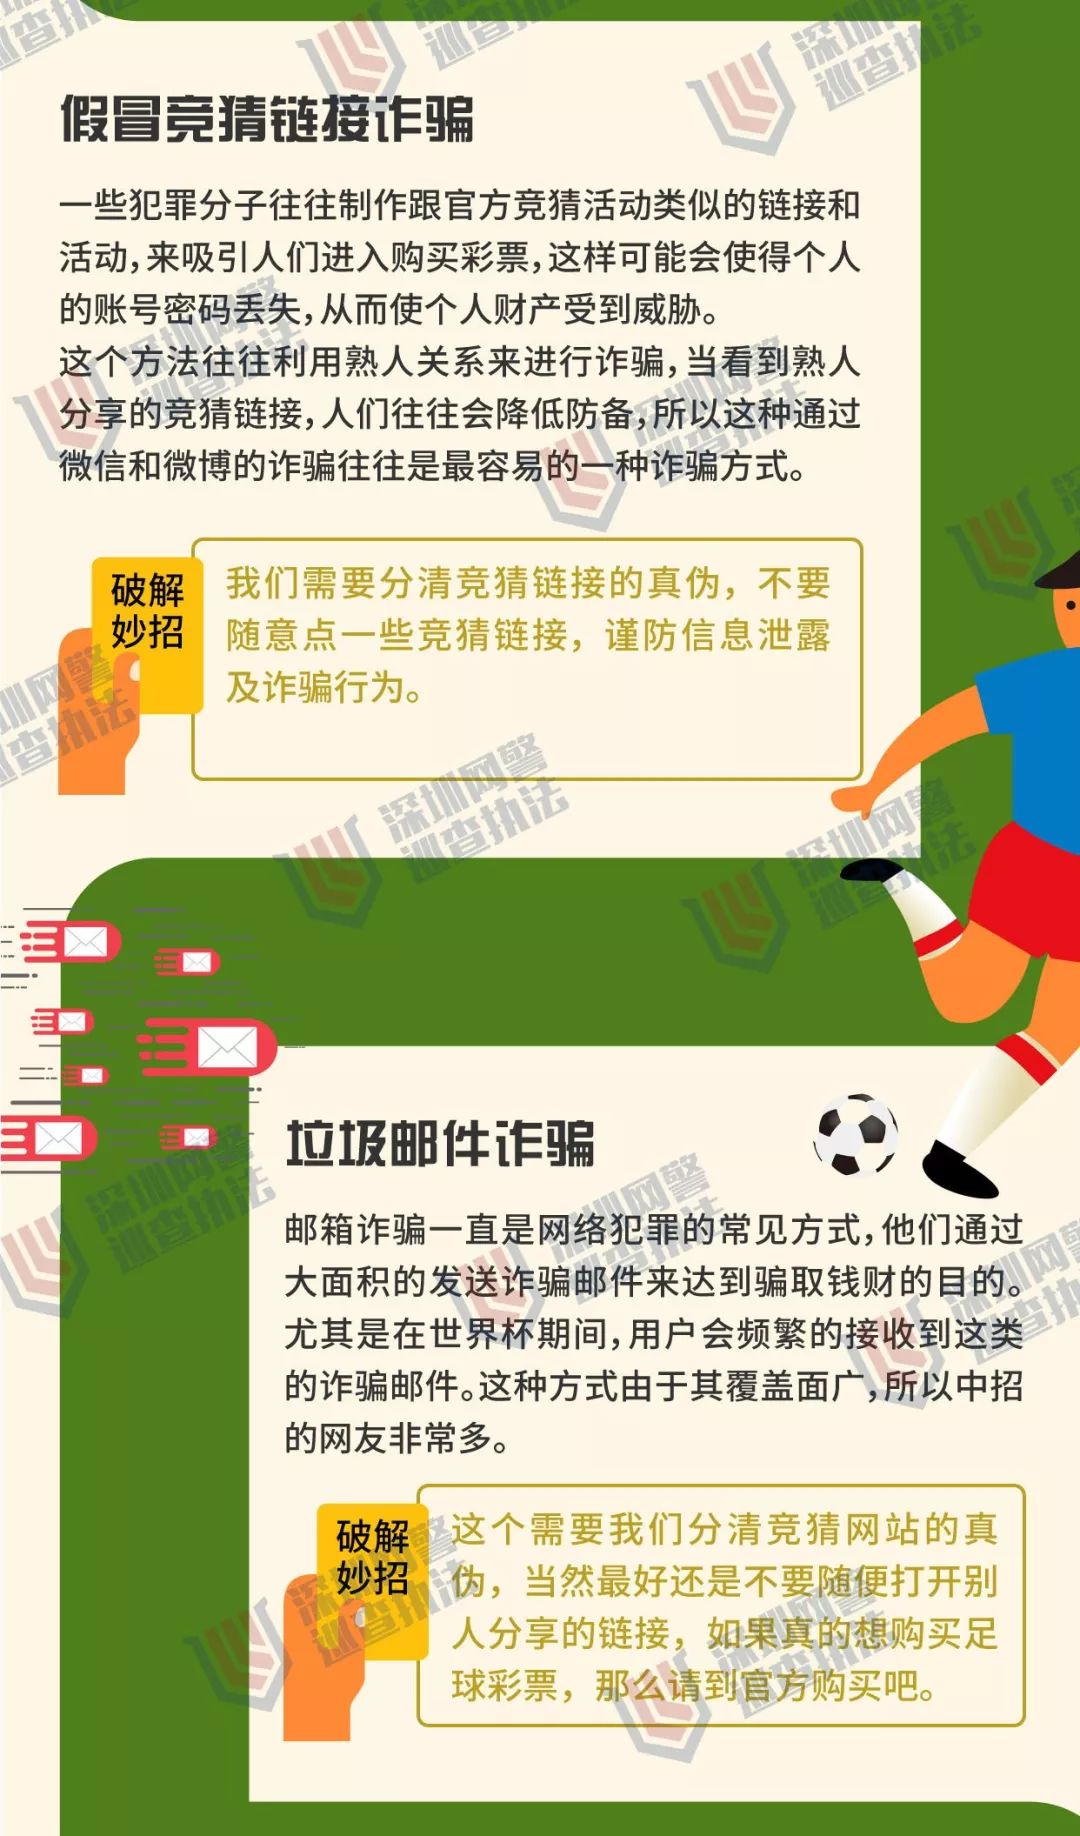 江苏警方揭秘世界杯赌球庄家:不怕你赢钱,就怕